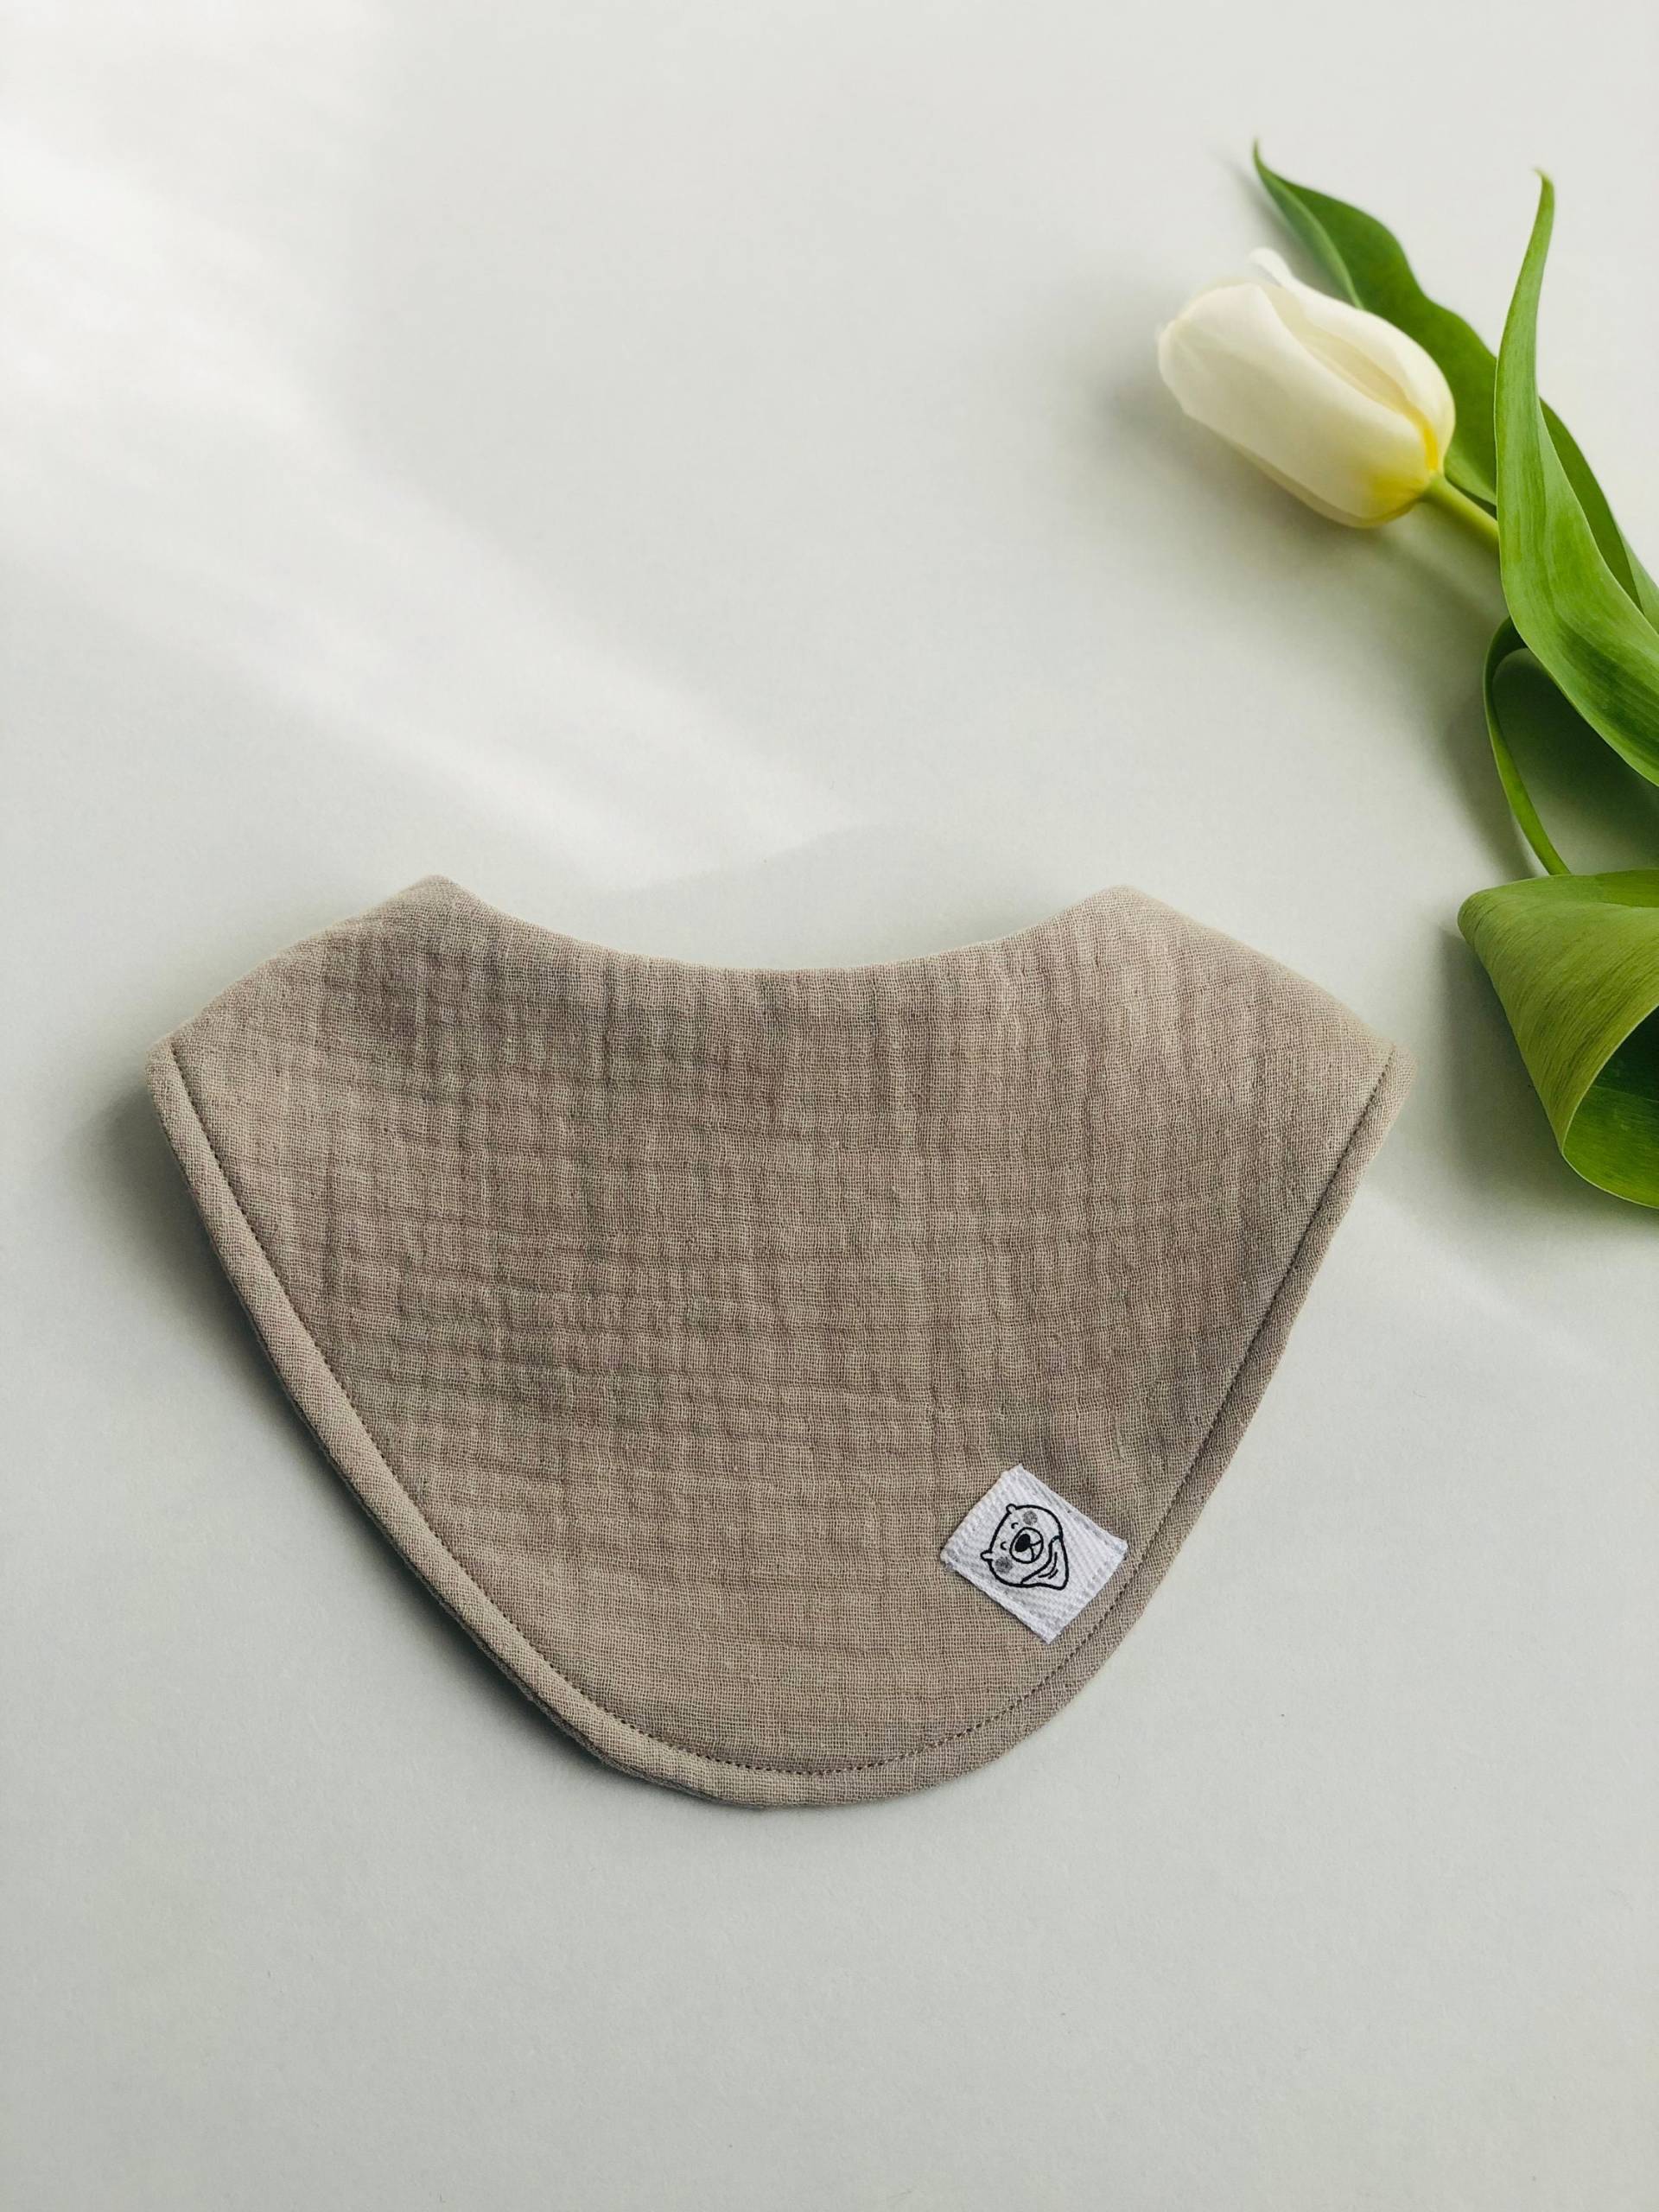 Minimalist Neutral Ton Lätzchen Musselin Bandana Baby Geschenk Aus Reiner Baumwolle von Etsy - BabyMoller